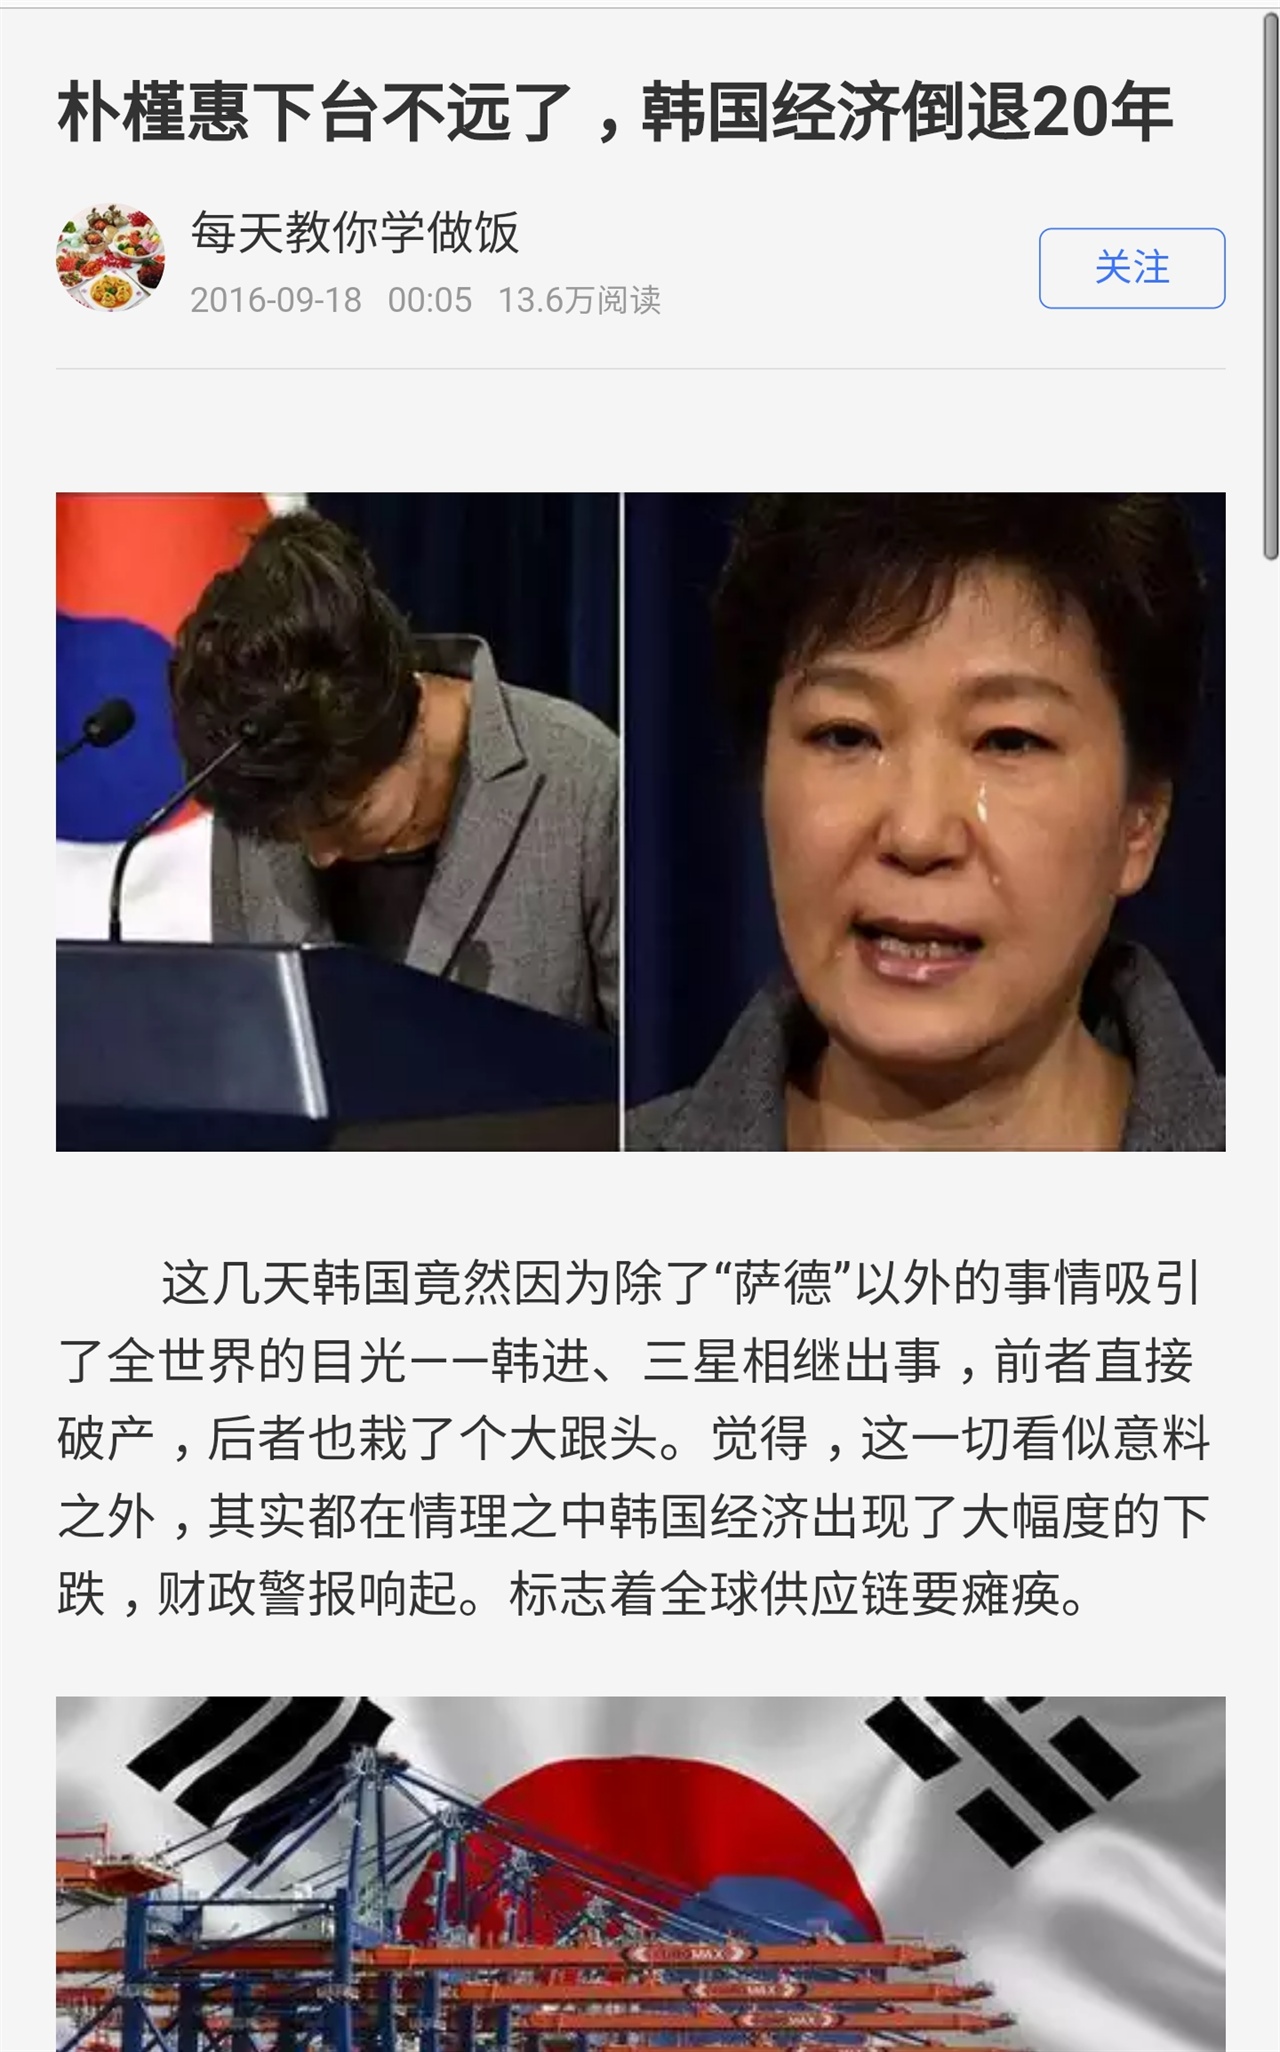 18일 0시에 올라온 기사는 박근혜 대통령 하야를 이야기하고 있다. 내정간섭 수준의 심각한 기사다